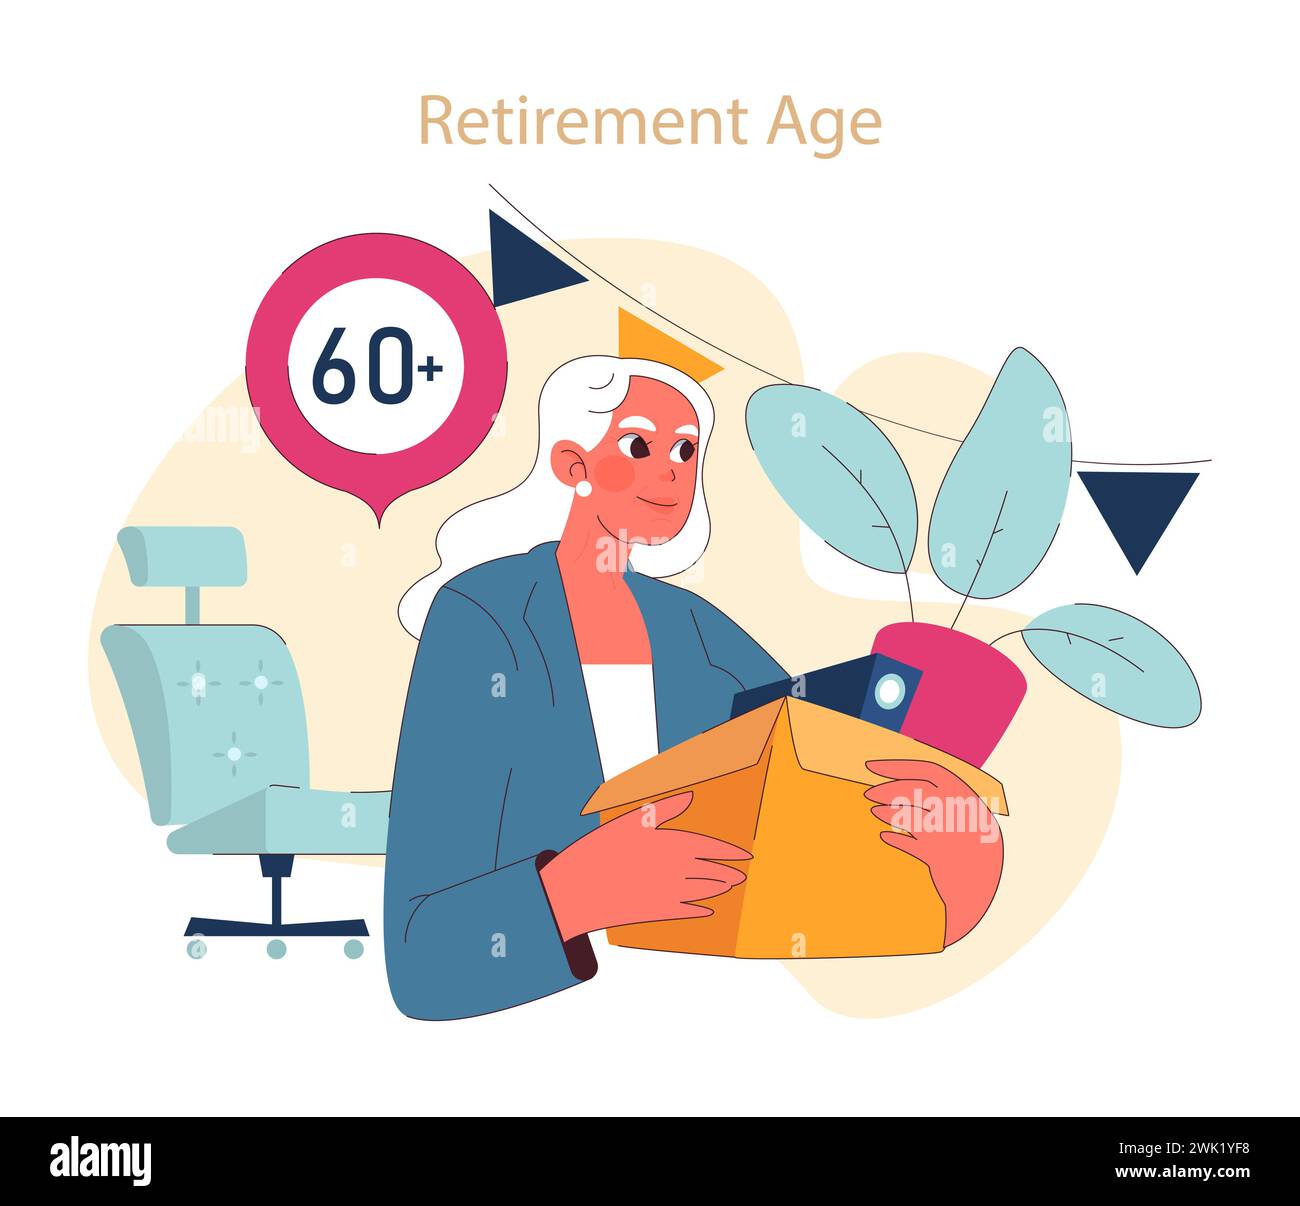 Abbracciare il concetto di età pensionabile. Un contenuto senior passa al pensionamento, un nuovo capitolo segnato da età e saggezza. Illustrazione Vettoriale